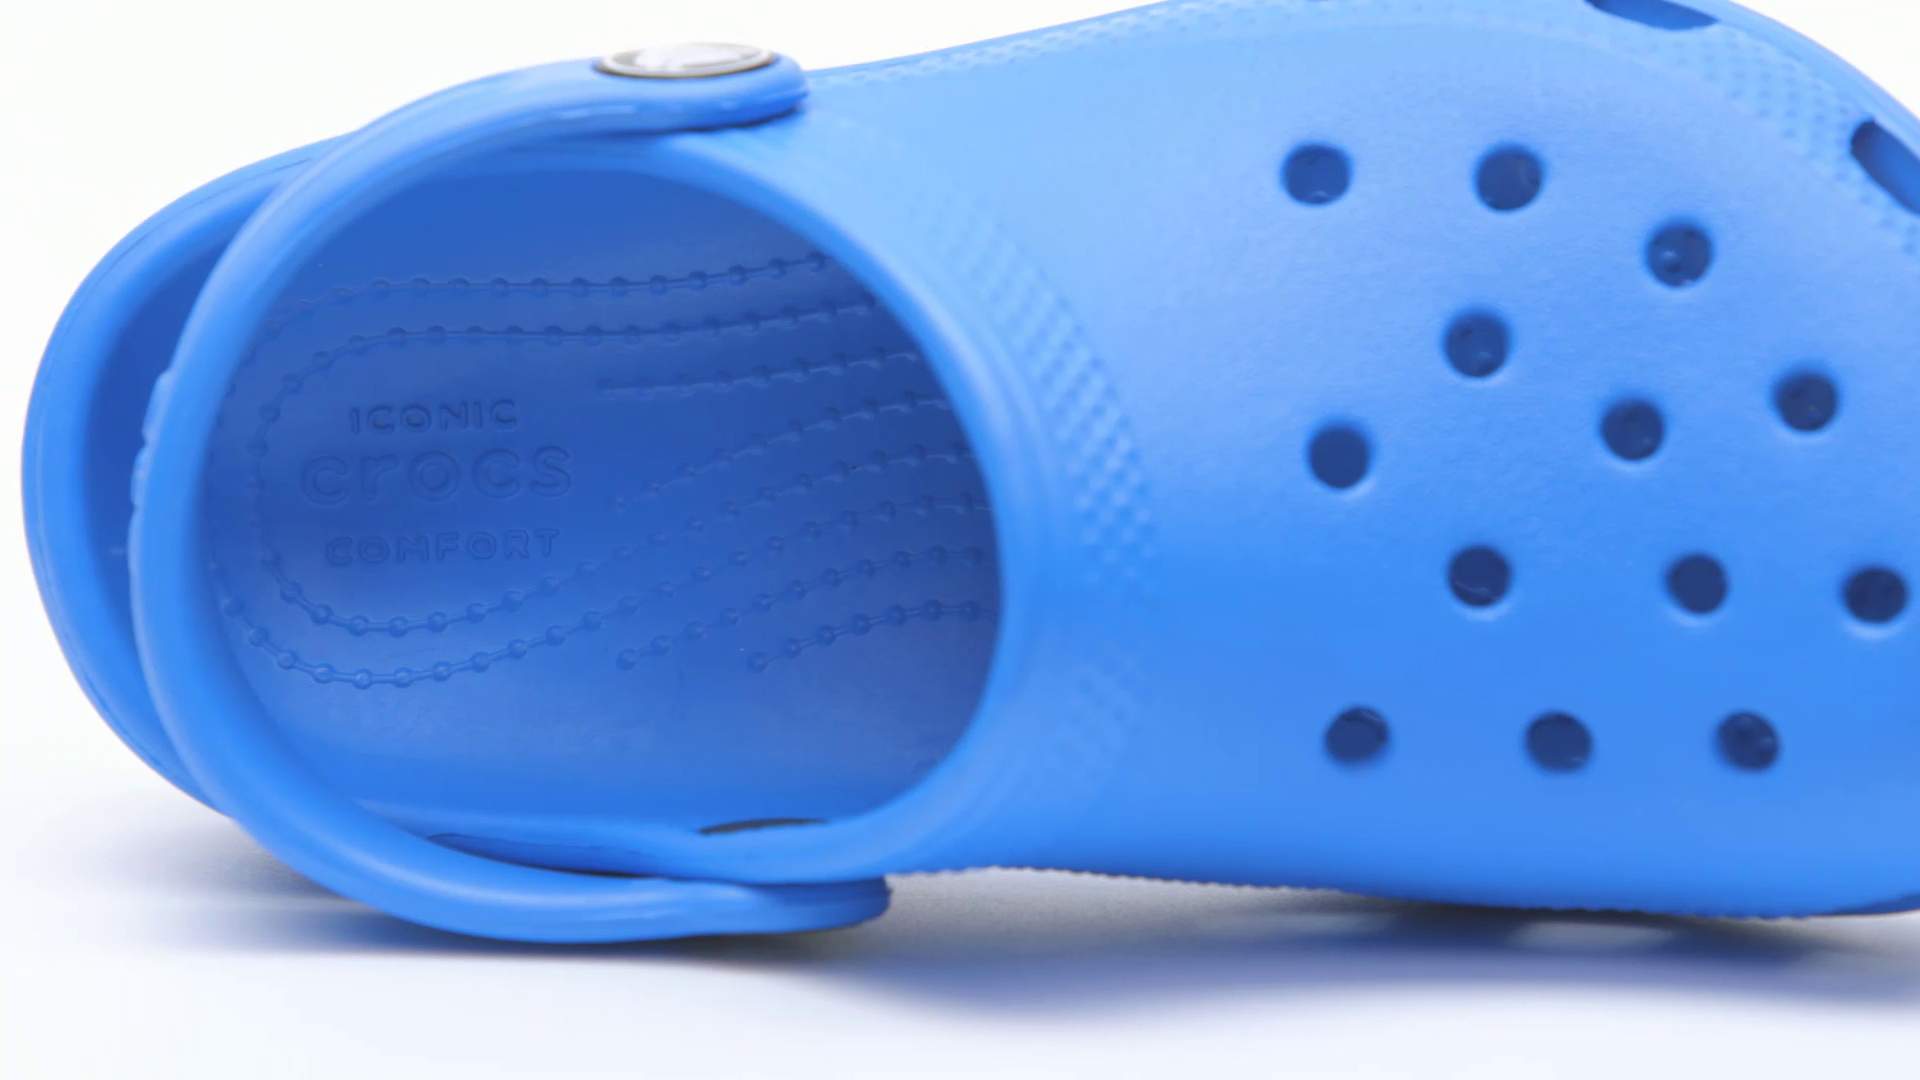 Crocband Clog K Tennis Ball Green/Ocean Blue Relaxed Fit Kids J1 Crocs 